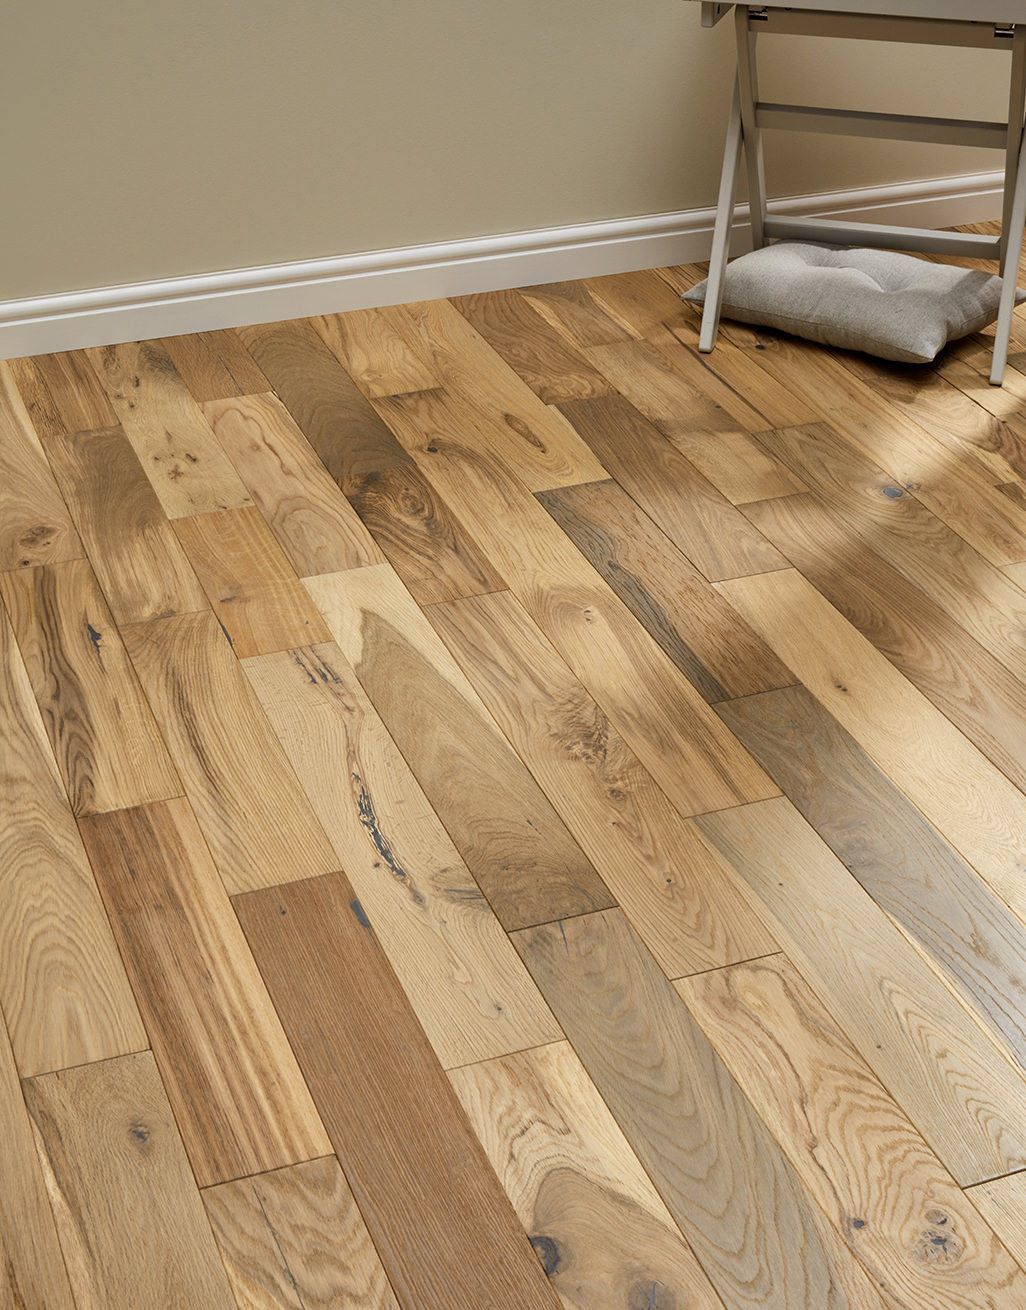 Oiled Engineered Wood Flooring, Blonde Hardwood Floors